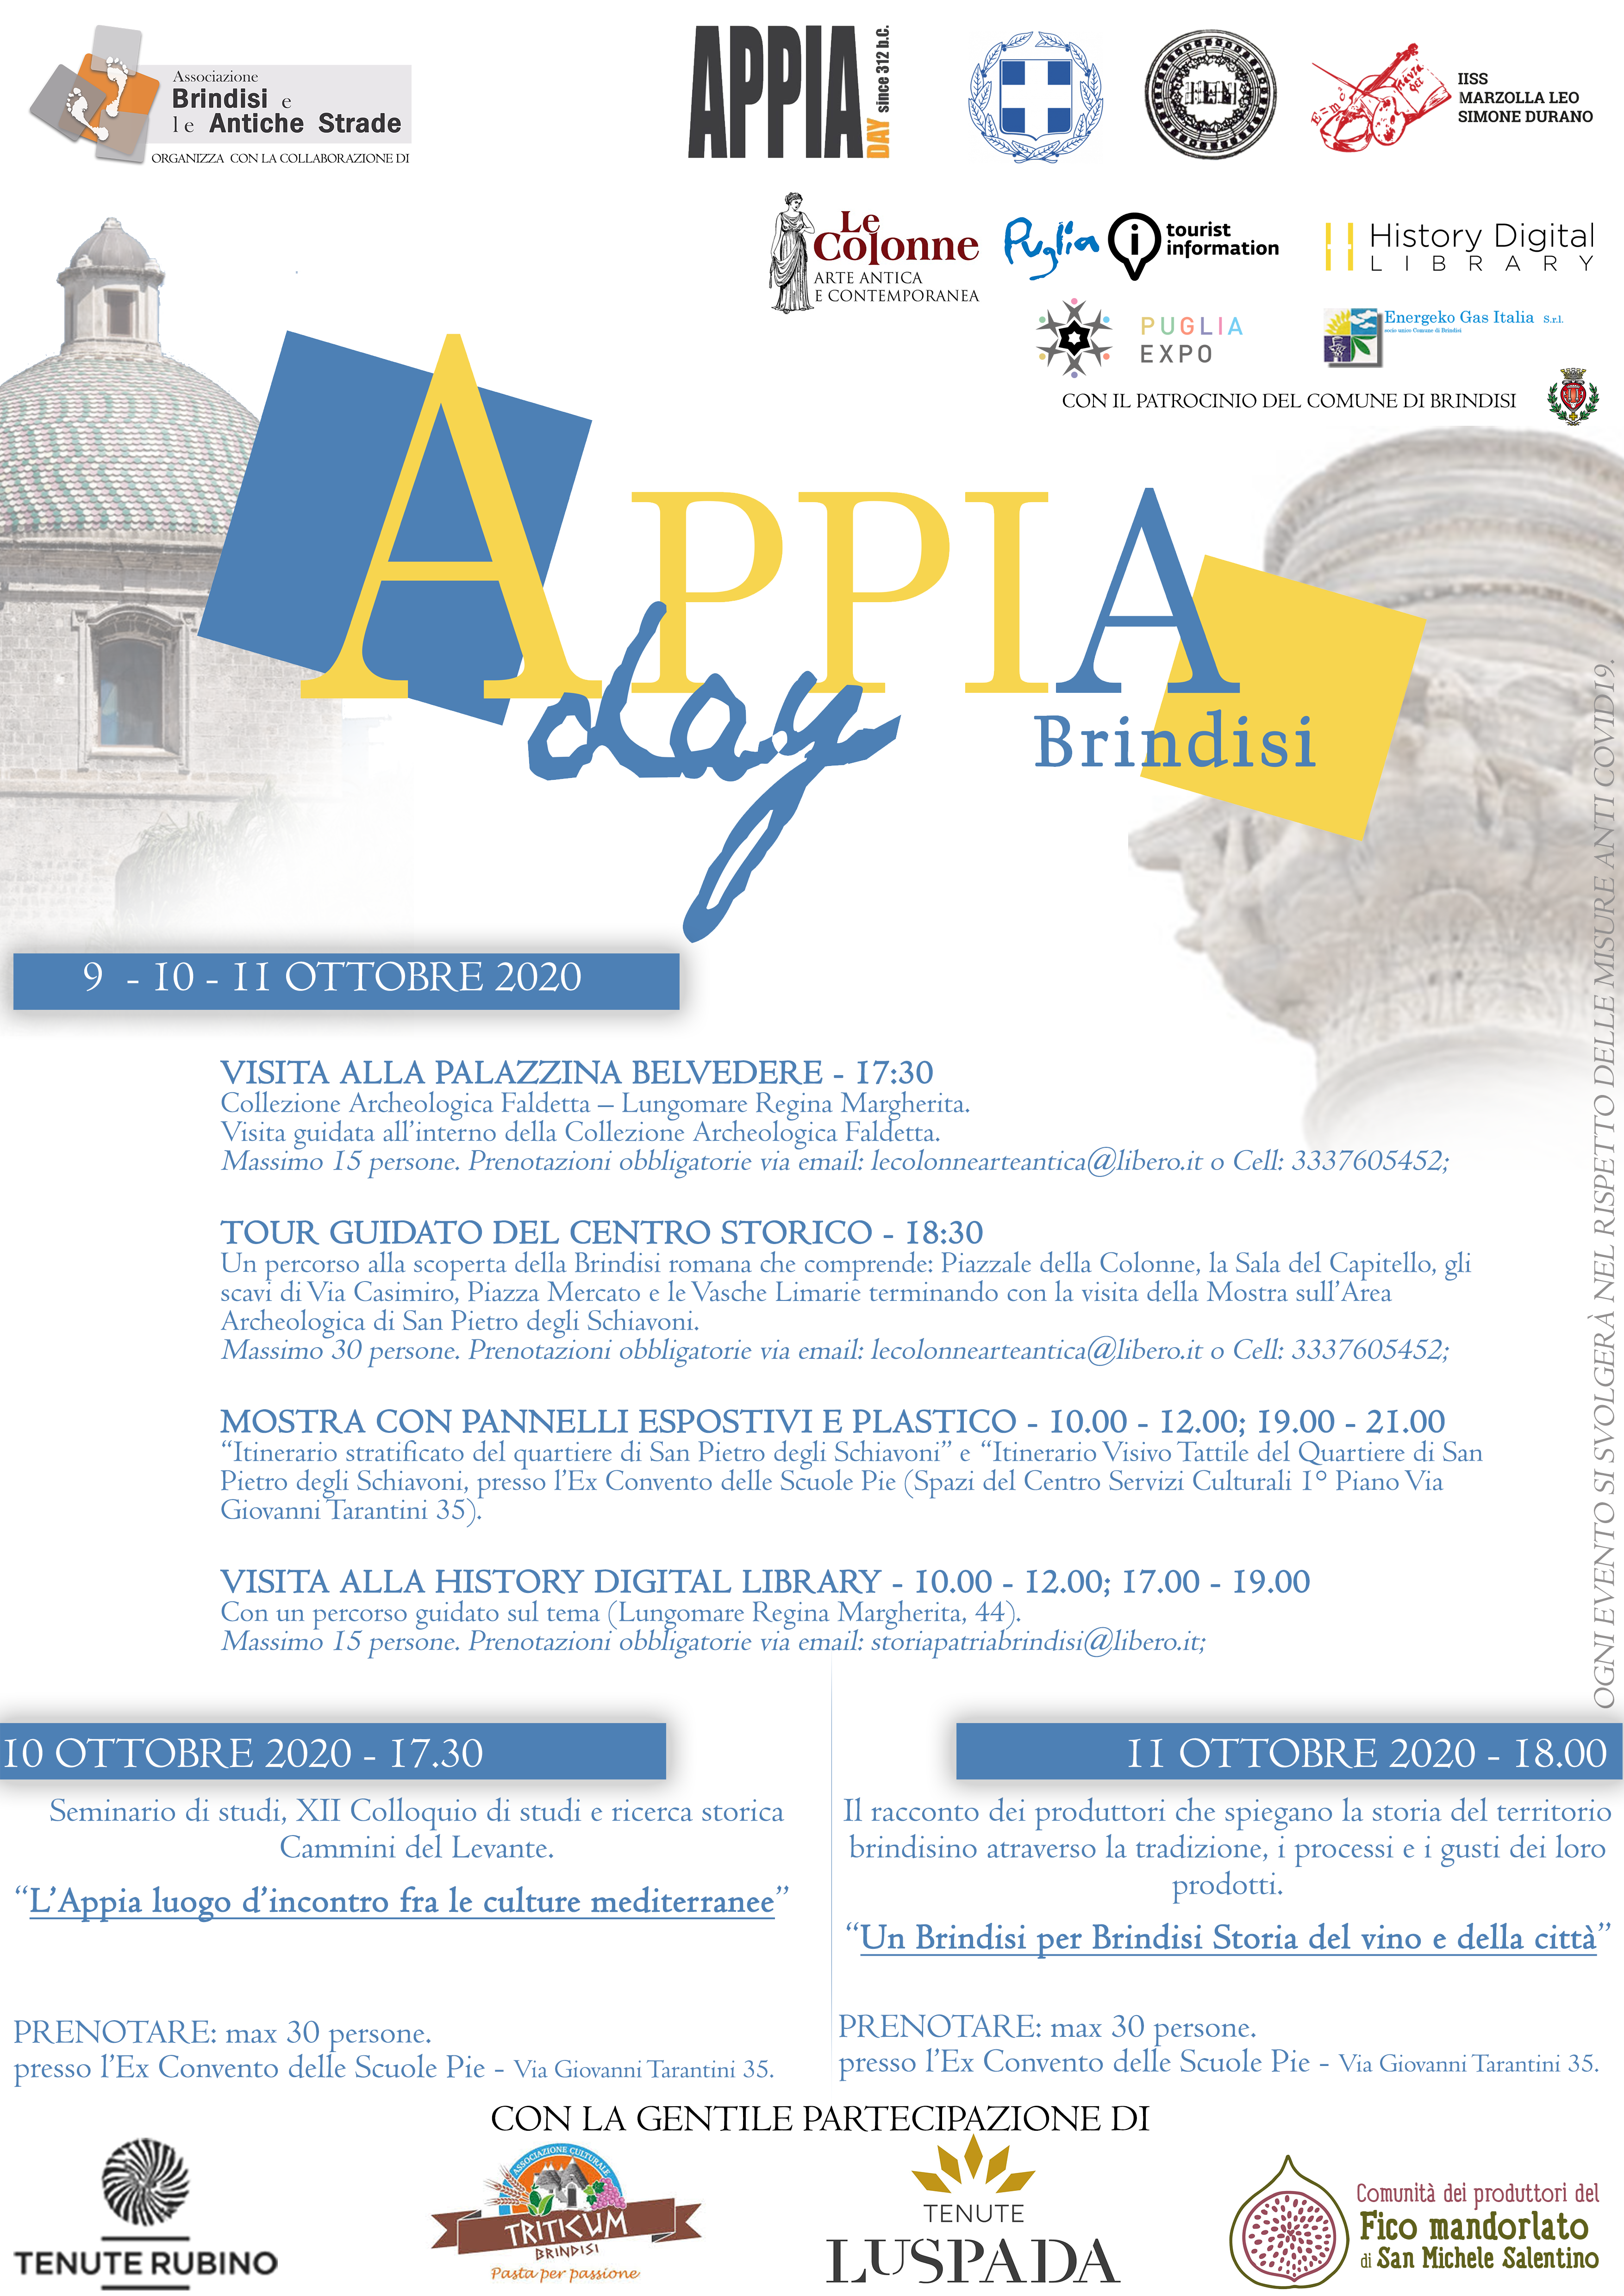 AppiaDay 2020: Il programma delle iniziative 9-10-11 Ottobre